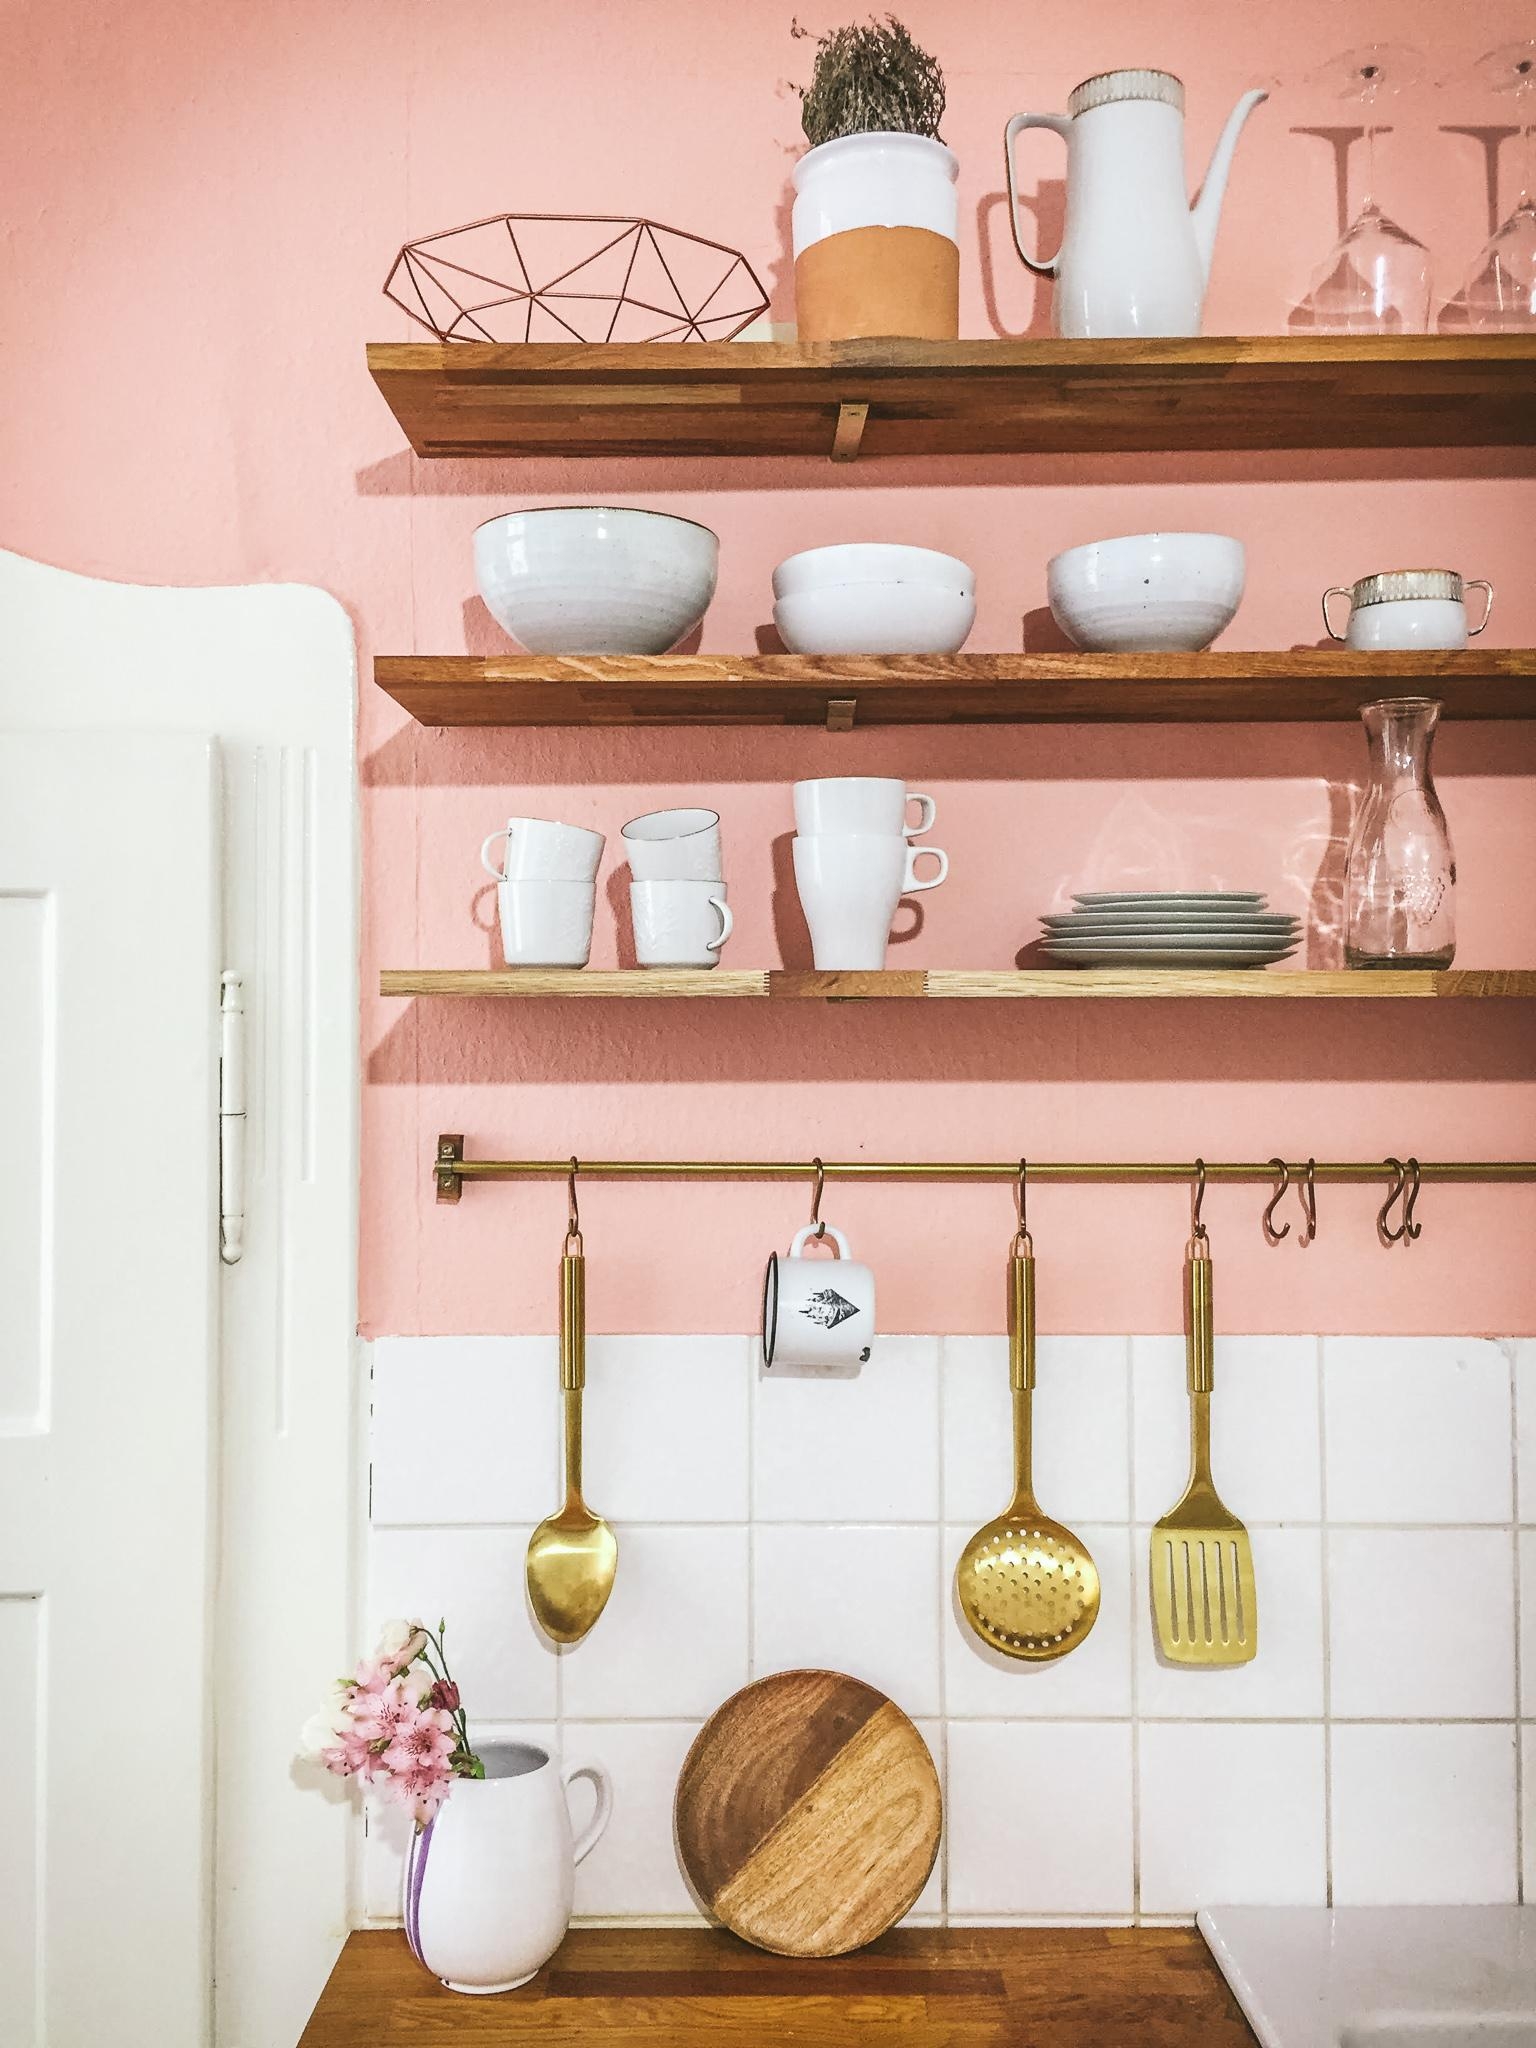 ich mag sie einfach meine pink lady. #küche #kücheninspo #couchliebt